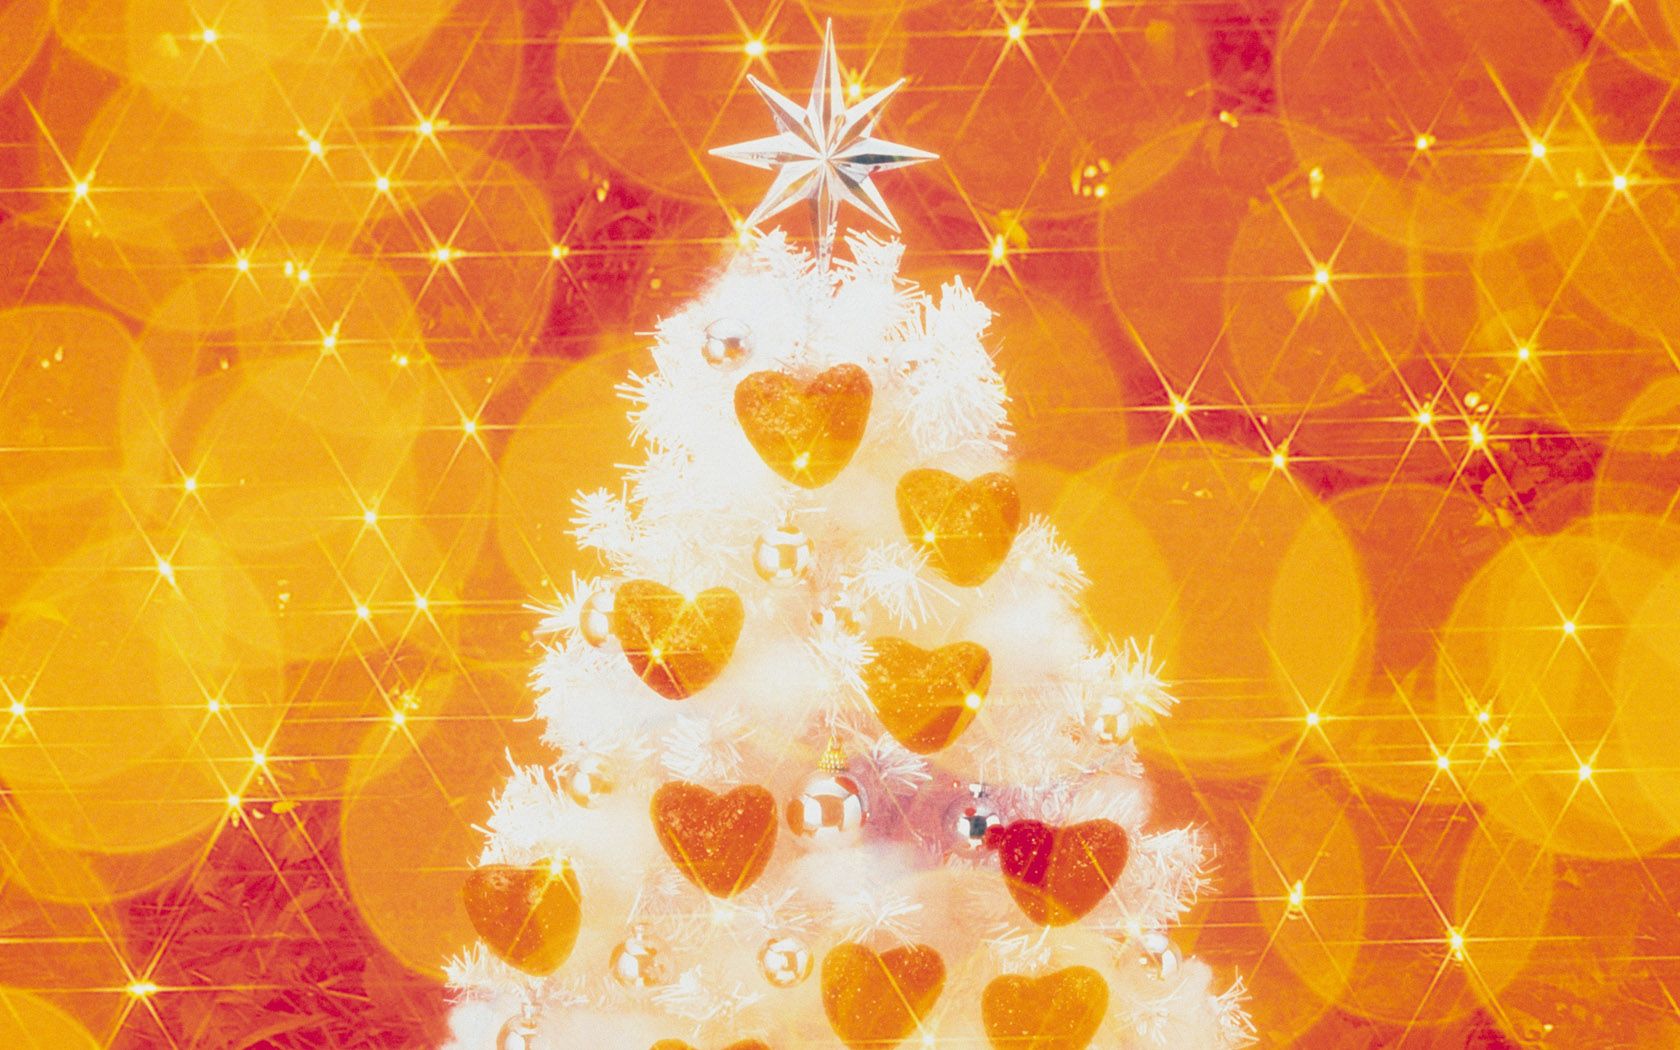 1680*1050 Widescreen Christmas Decoration Christmas light Ornament Wallpaper 1680x1050 NO.2 Desktop Wallpaper